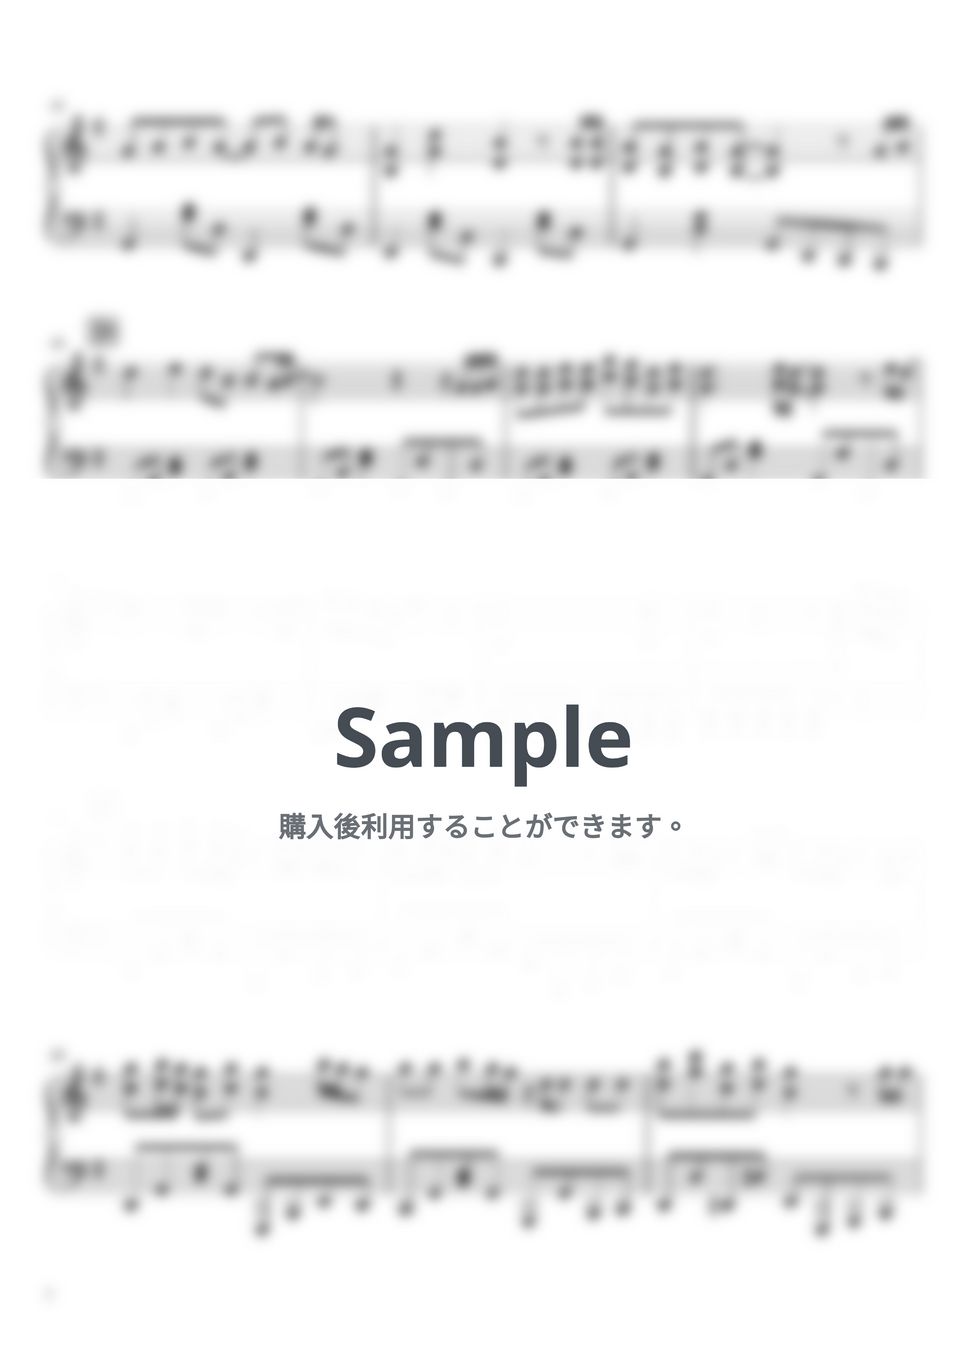 夜のひと笑い - ミライチズ (ピアノソロ / 中級) by SuperMomoFactory